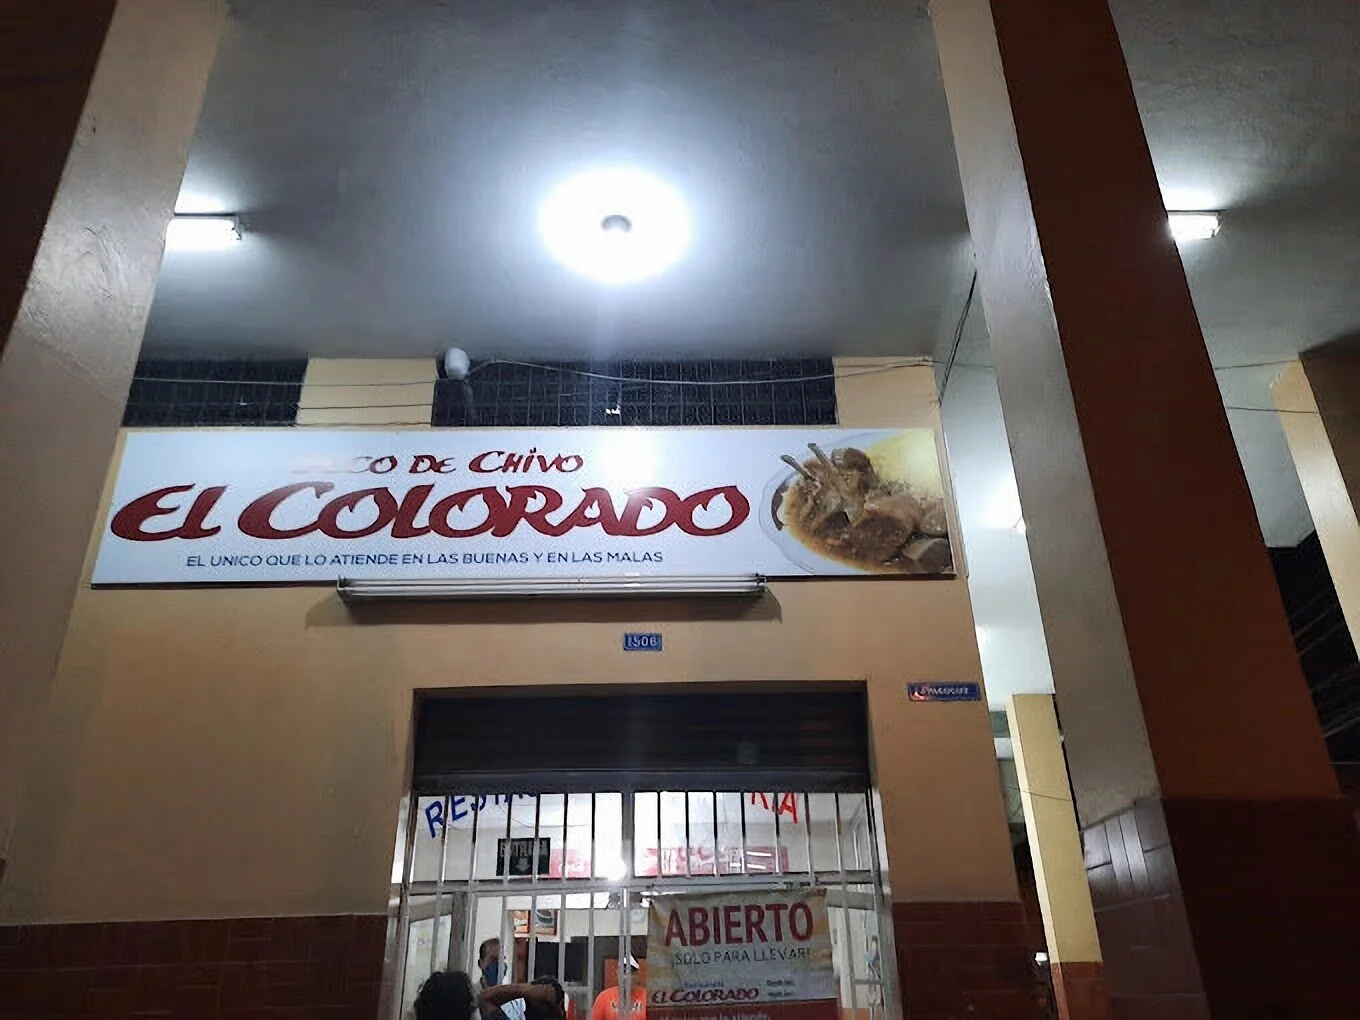 Restaurant "El Colorado"-4035